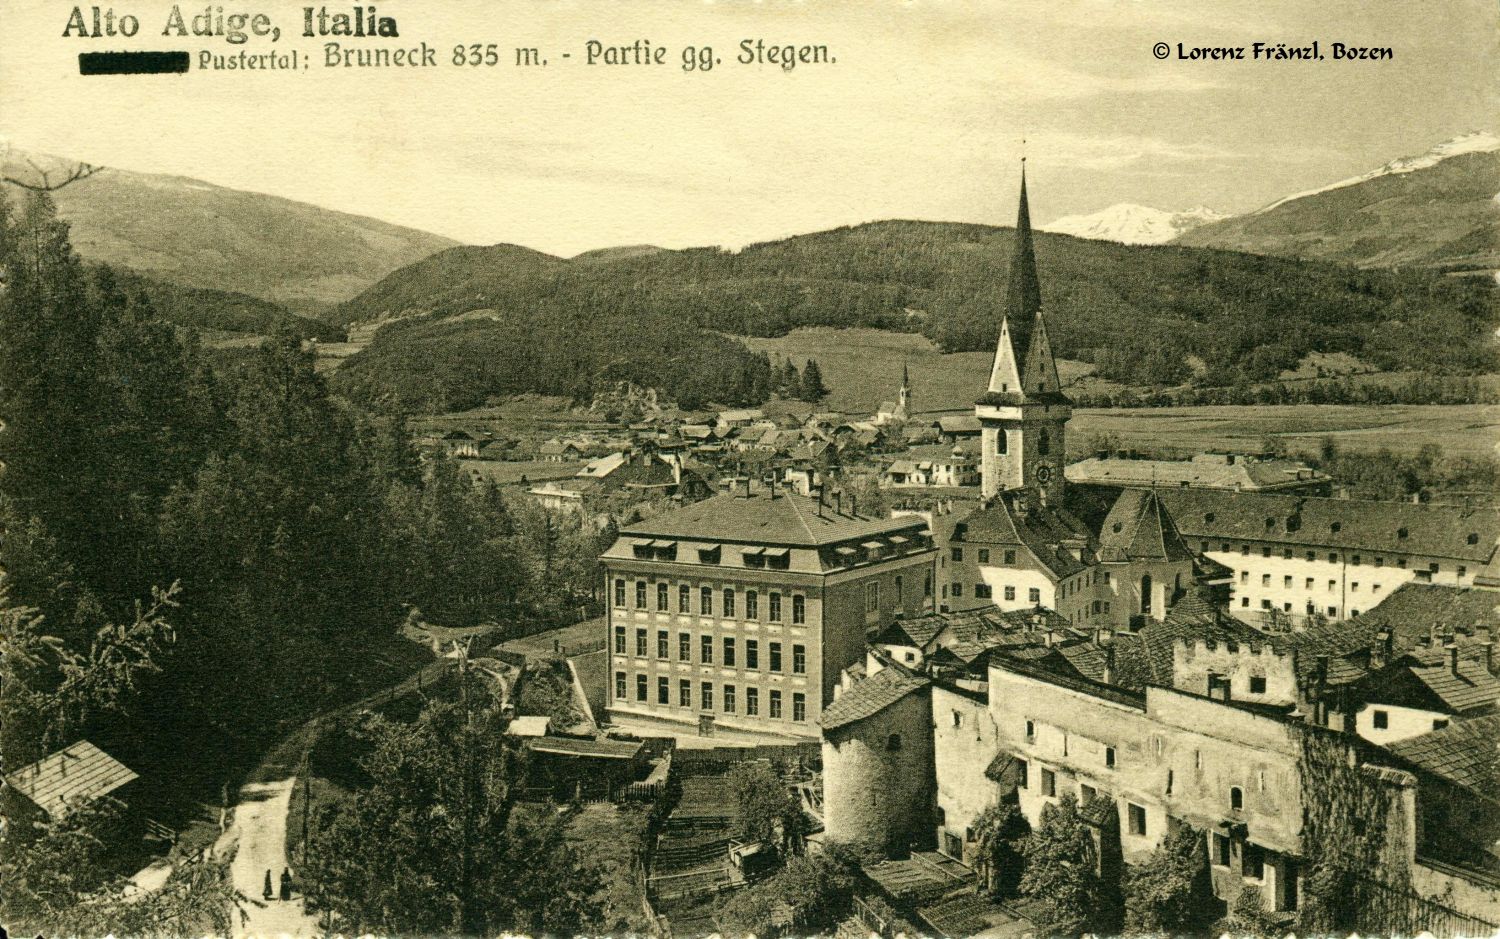 Bruneck 1920